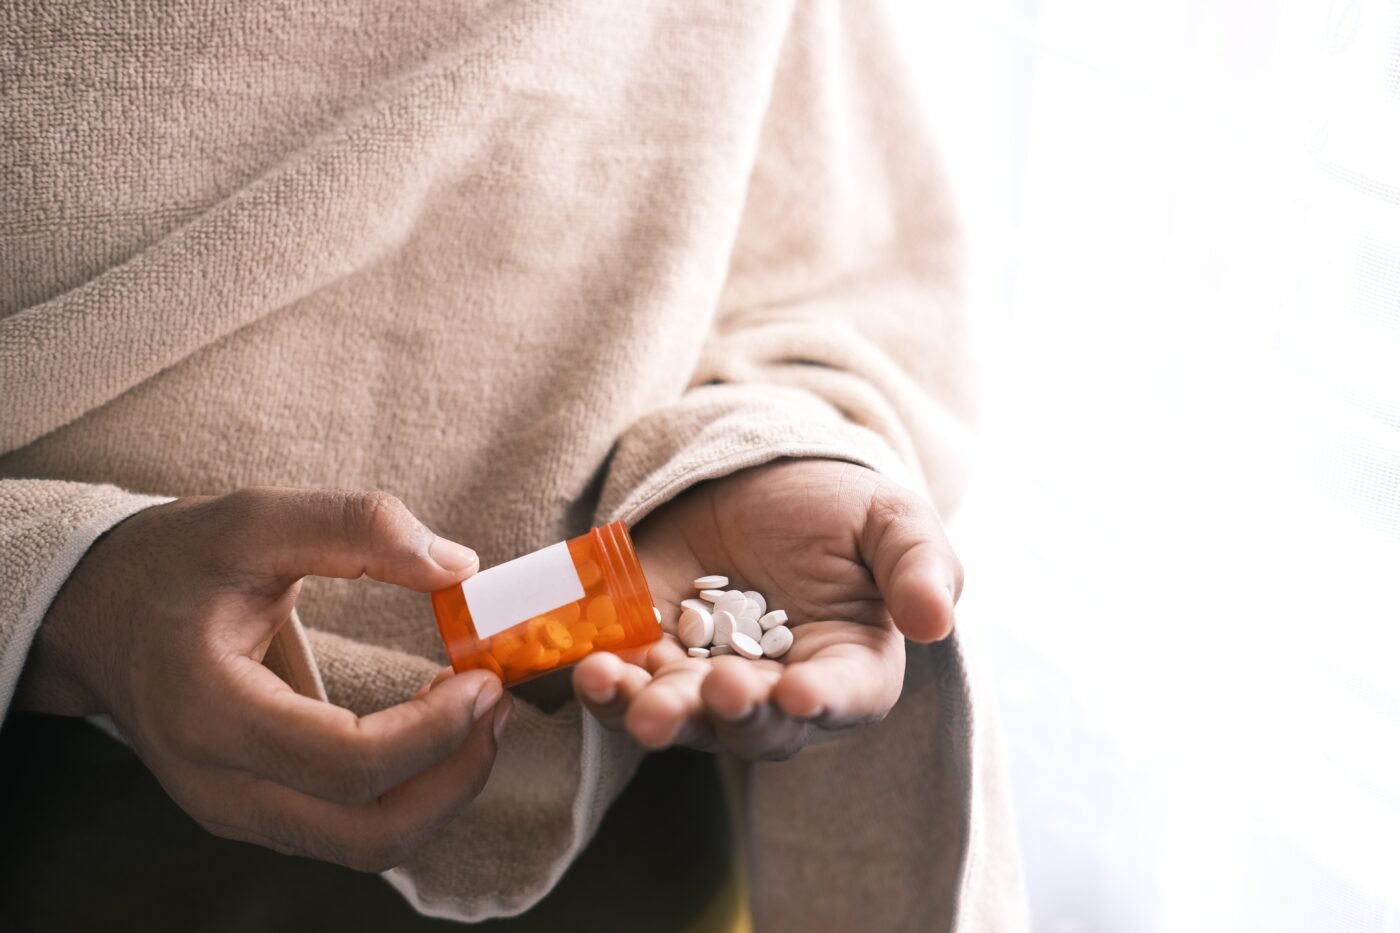 How Modern Medicine Helps People Battle Drug Addiction